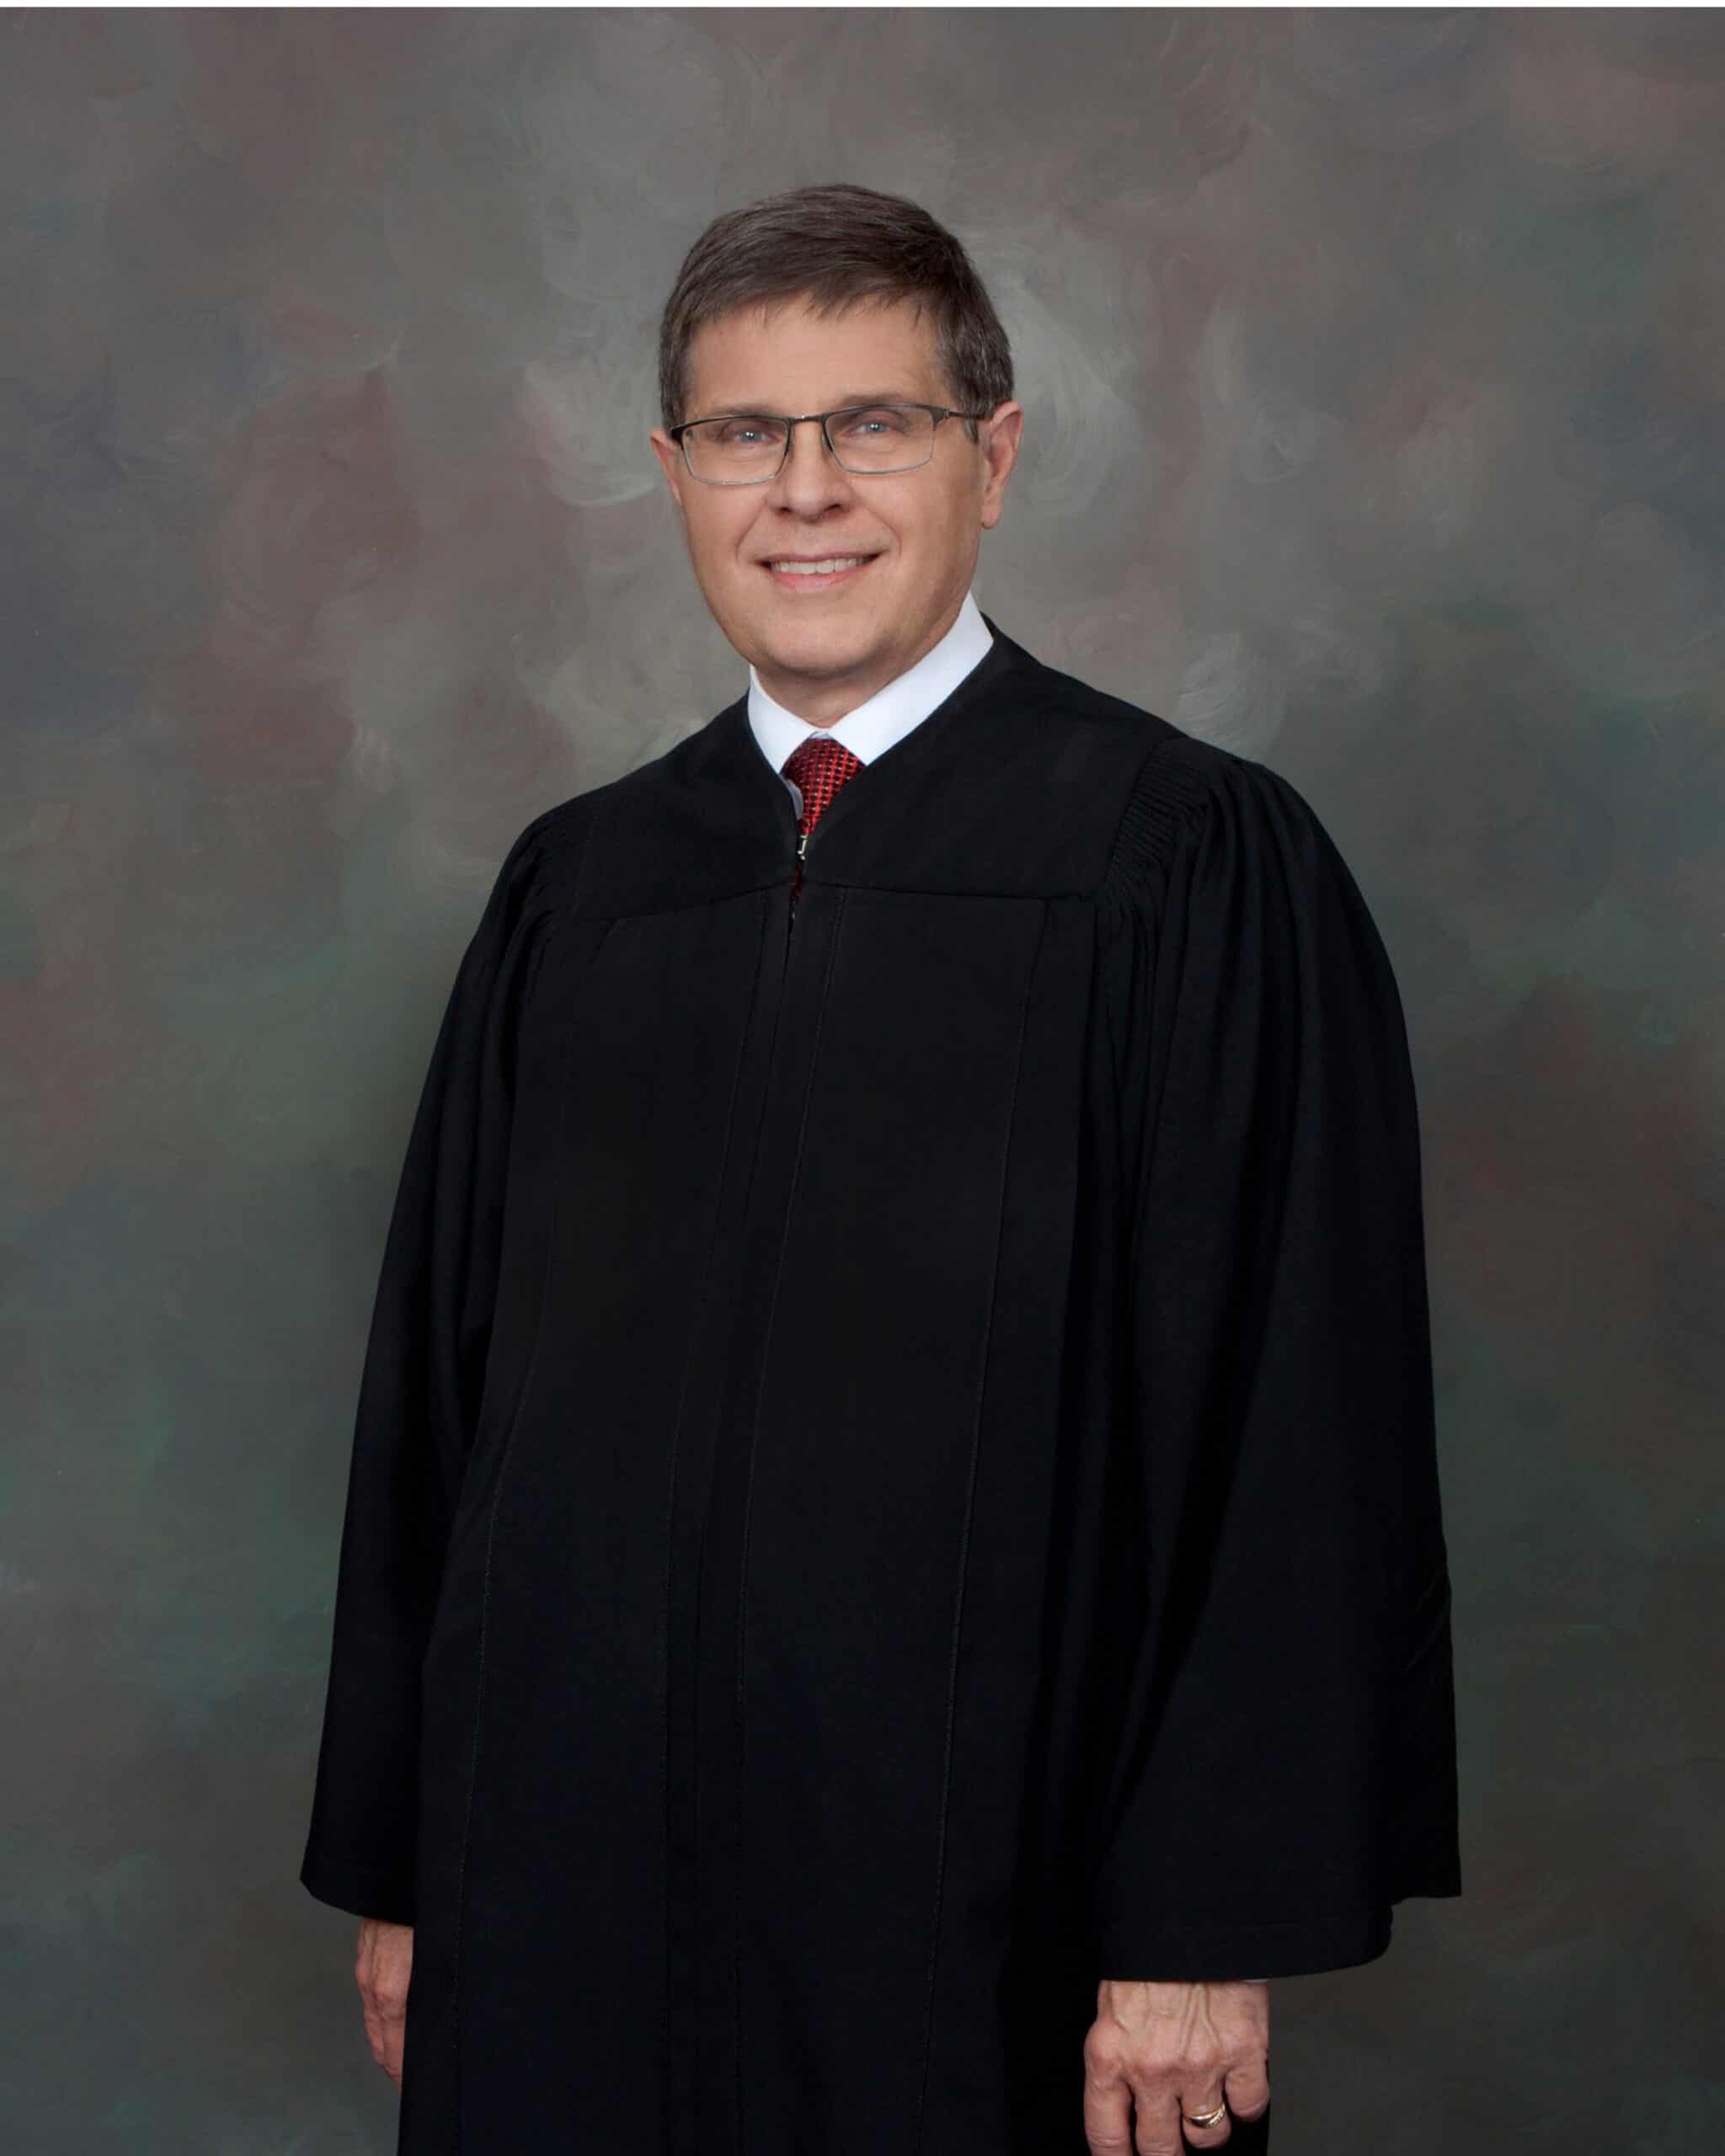 Judge Hagen